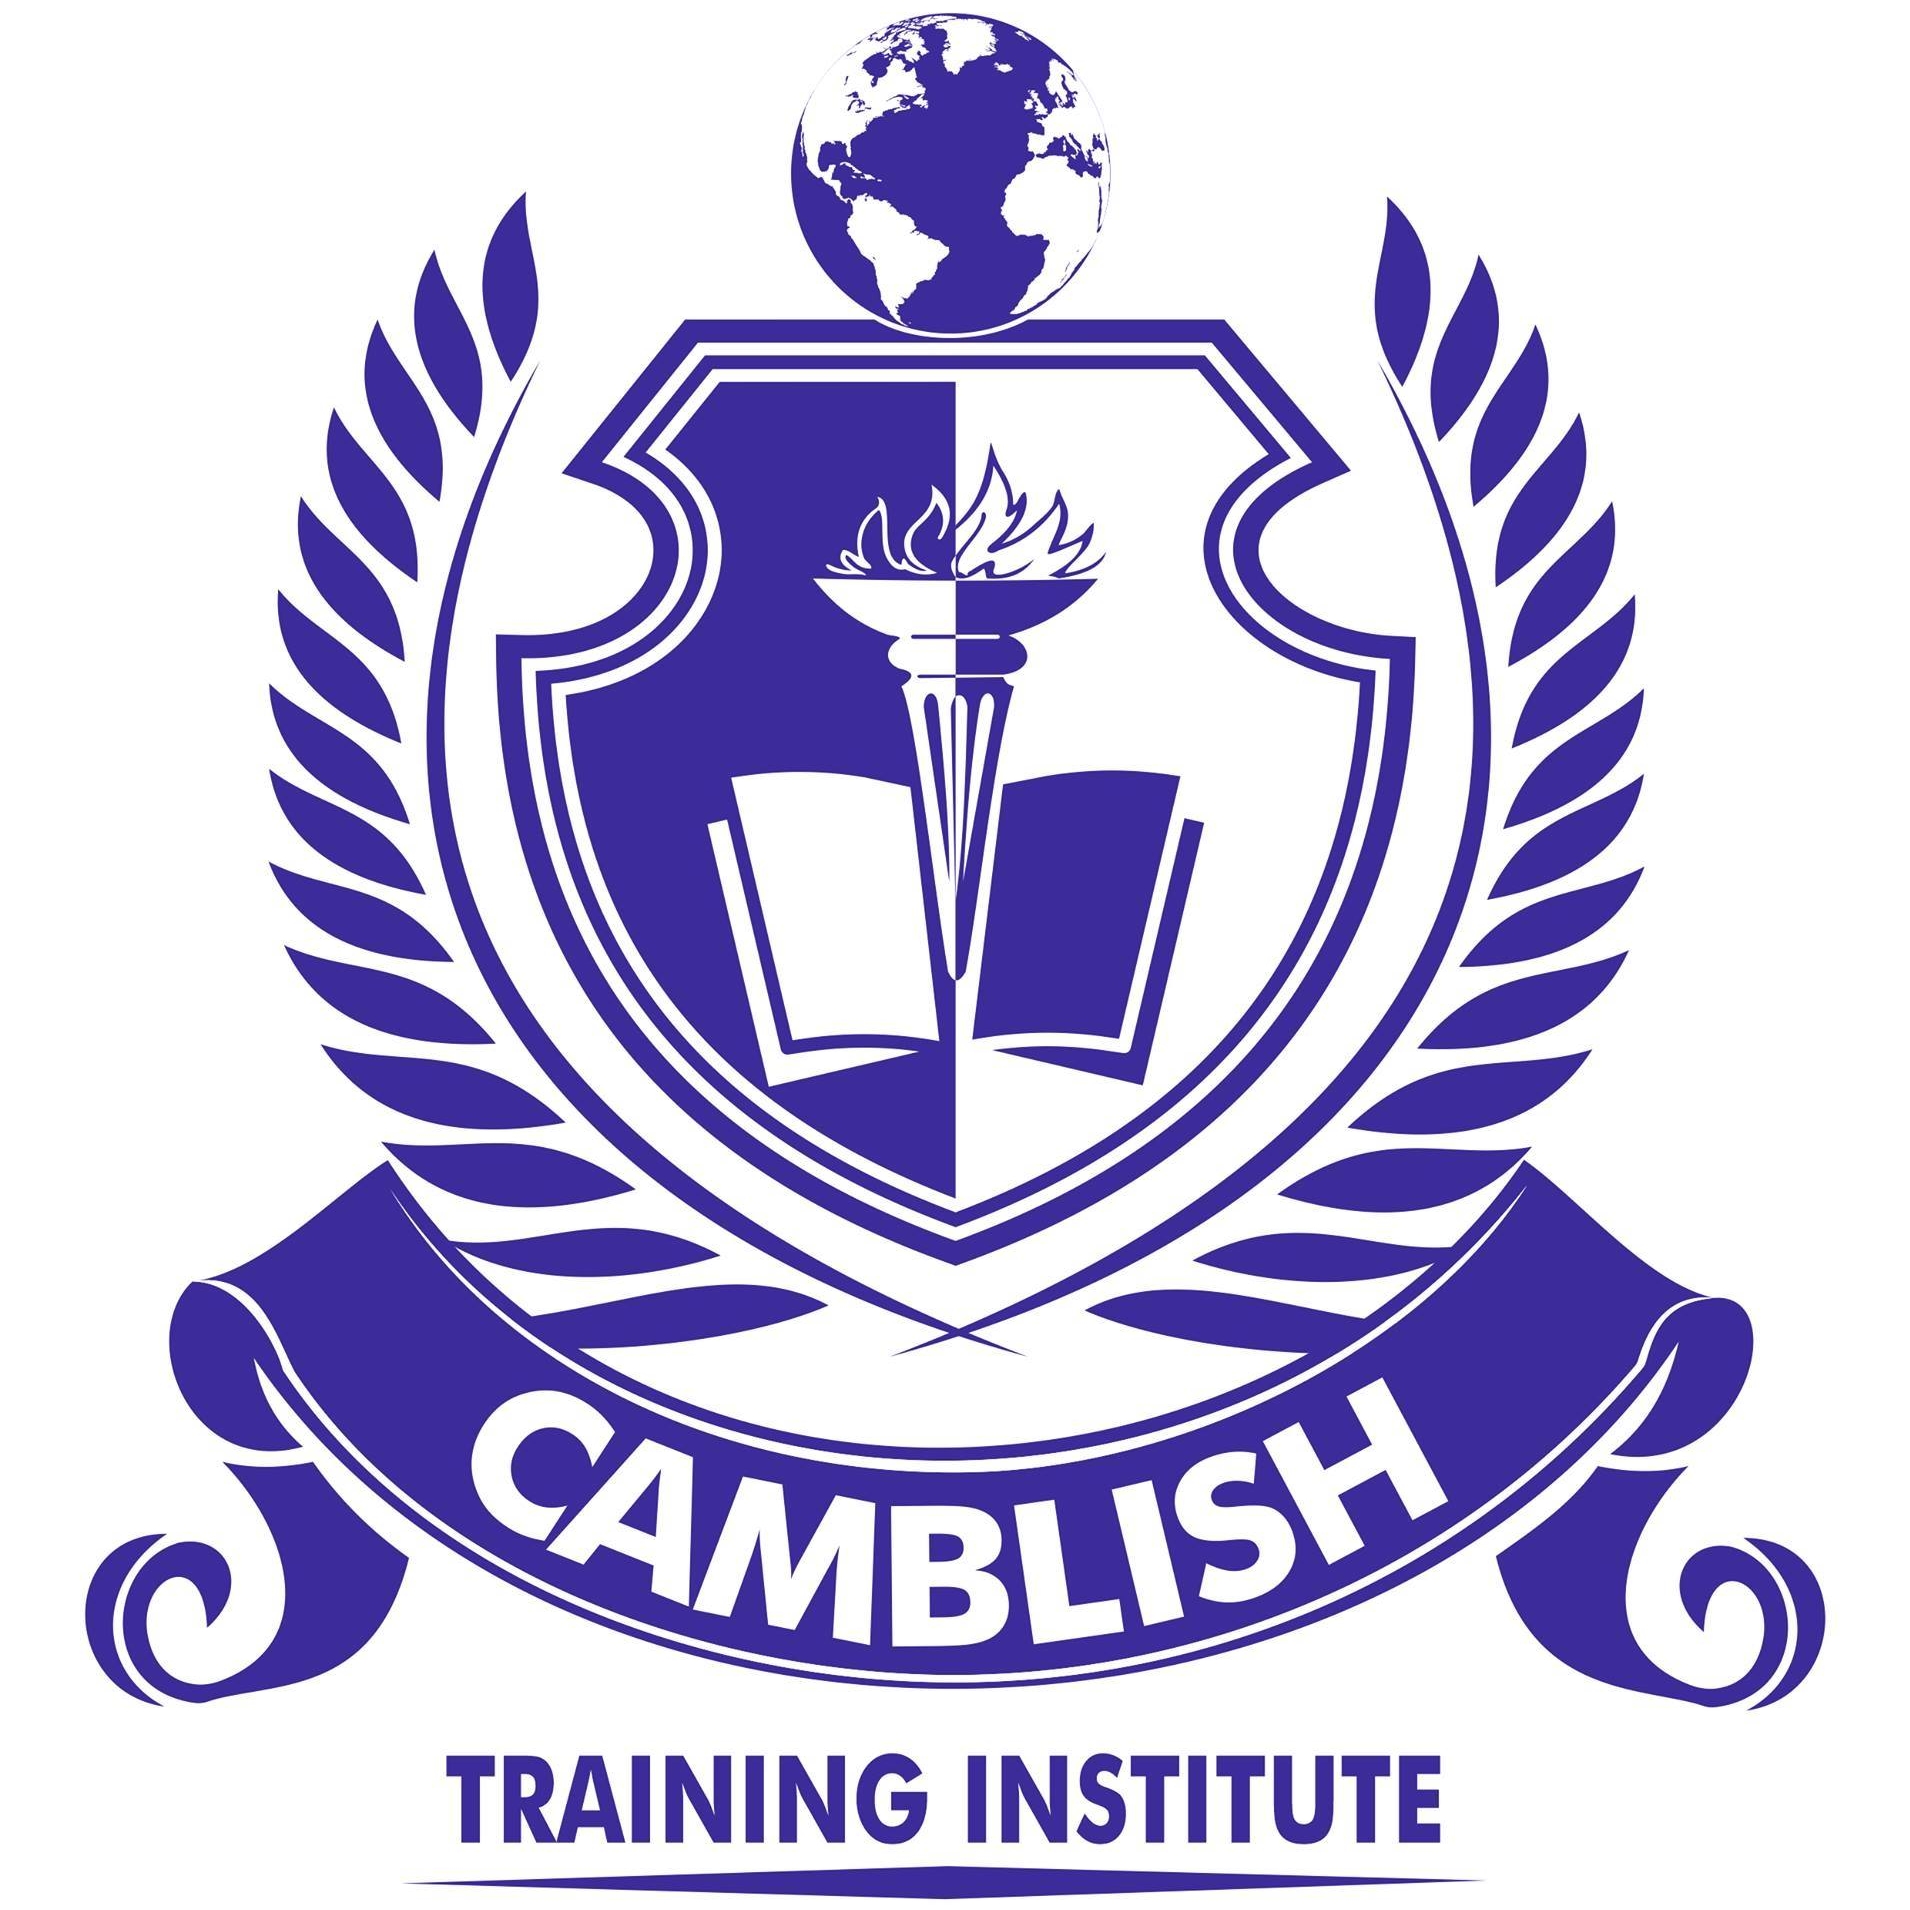 Camblish Training logo